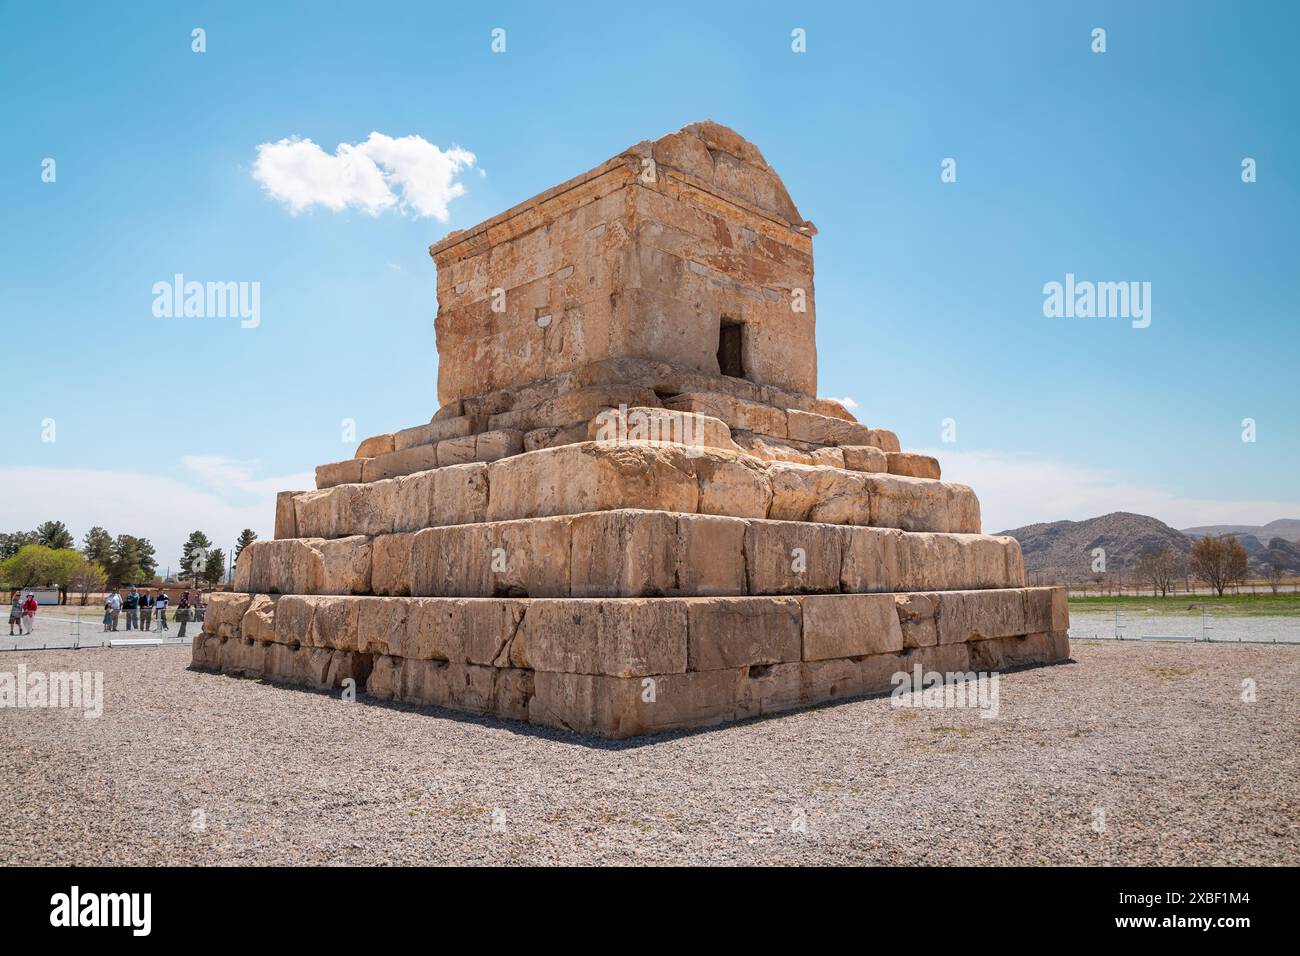 Tombeau de Cyrus le Grand (559 - 530 av. J.-C.) fondateur du premier Empire perse, Un site du patrimoine mondial de l'UNESCO situé à Pasargadae, au nord de Shiraz, Iran Banque D'Images